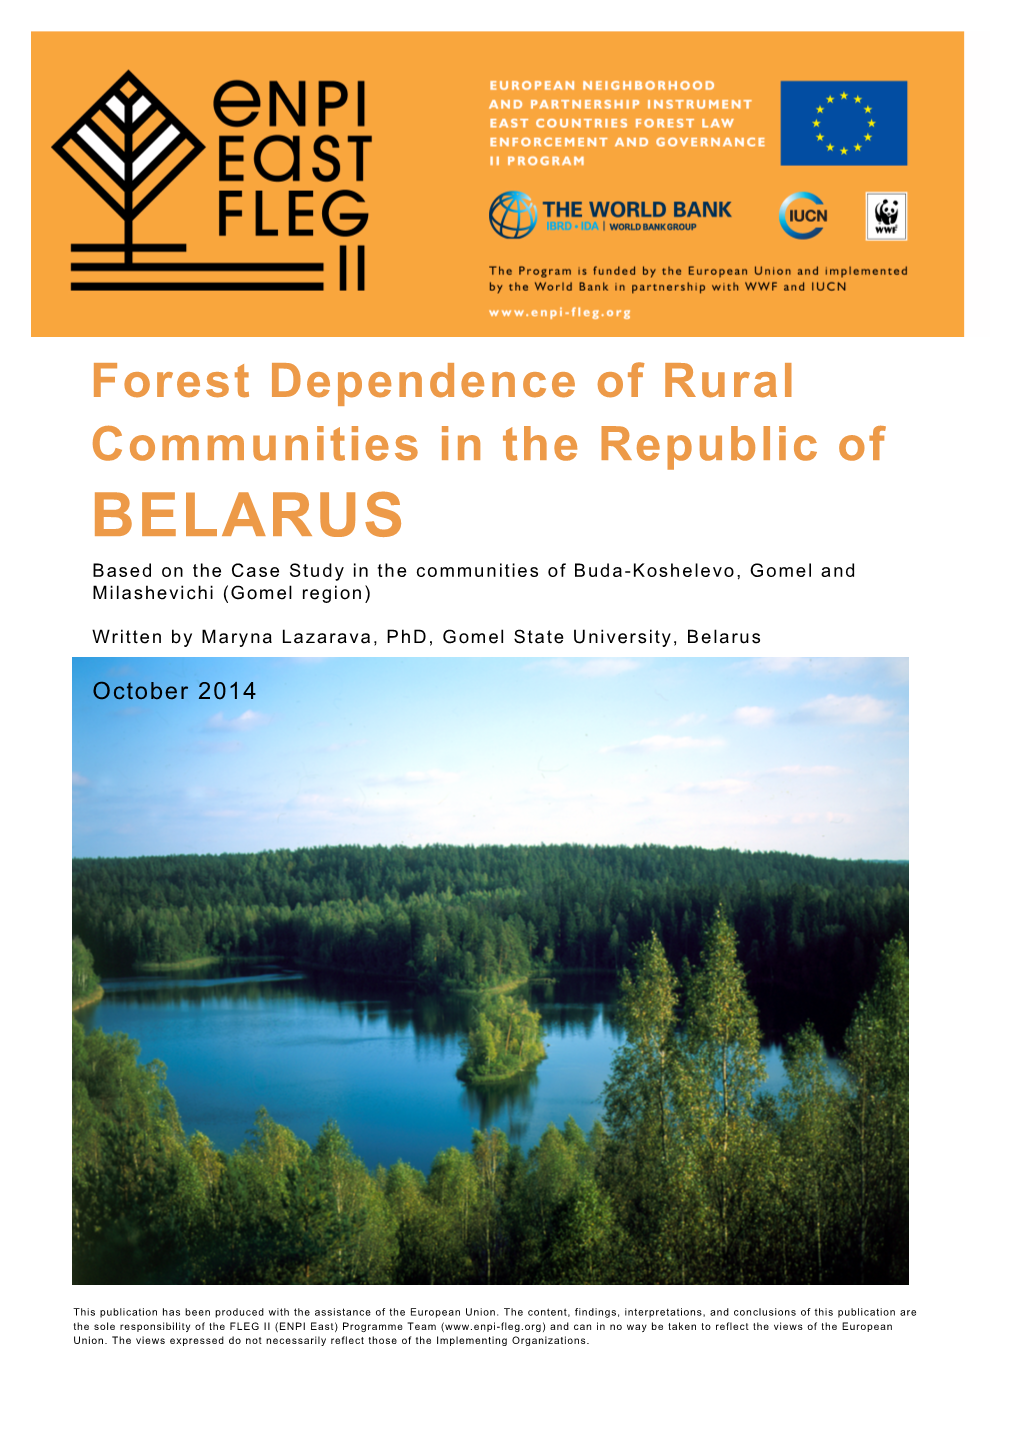 BELARUS Based on the Case Study in the Communities of Buda-Koshelevo, Gomel and Milashevichi (Gomel Region)